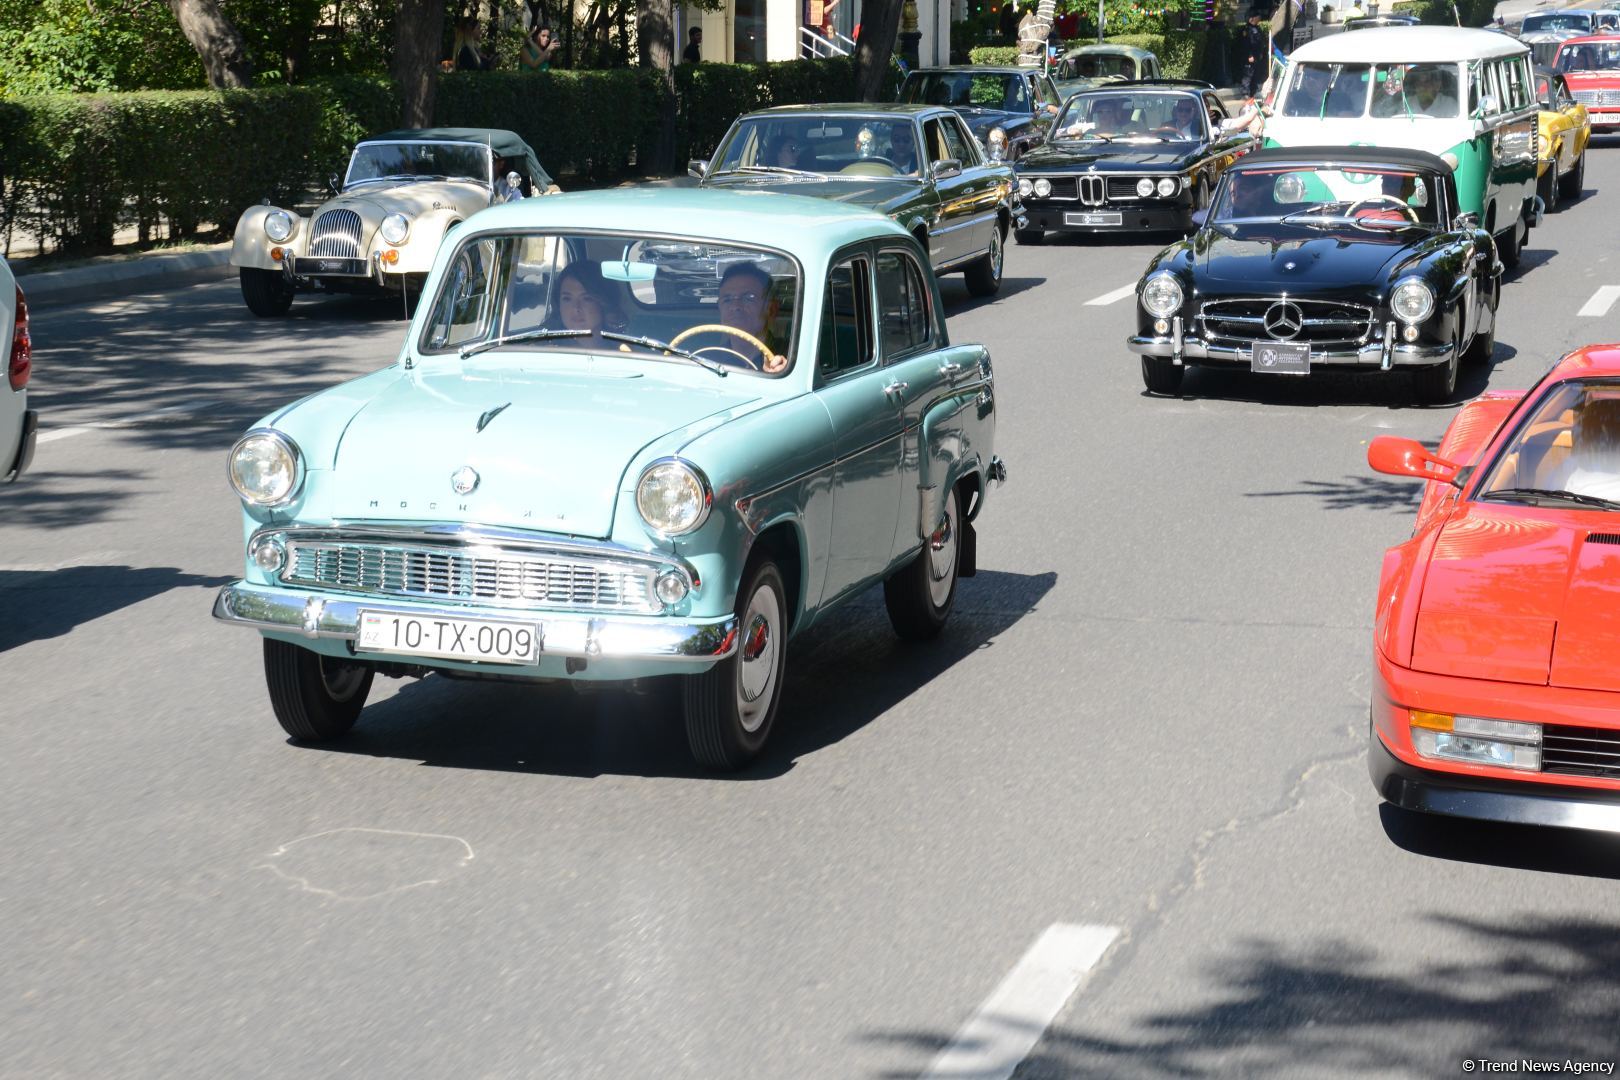 Paytaxtın mərkəzi küçələrində klassik avtomobillərin yürüşü keçirilib (FOTO/VİDEO)